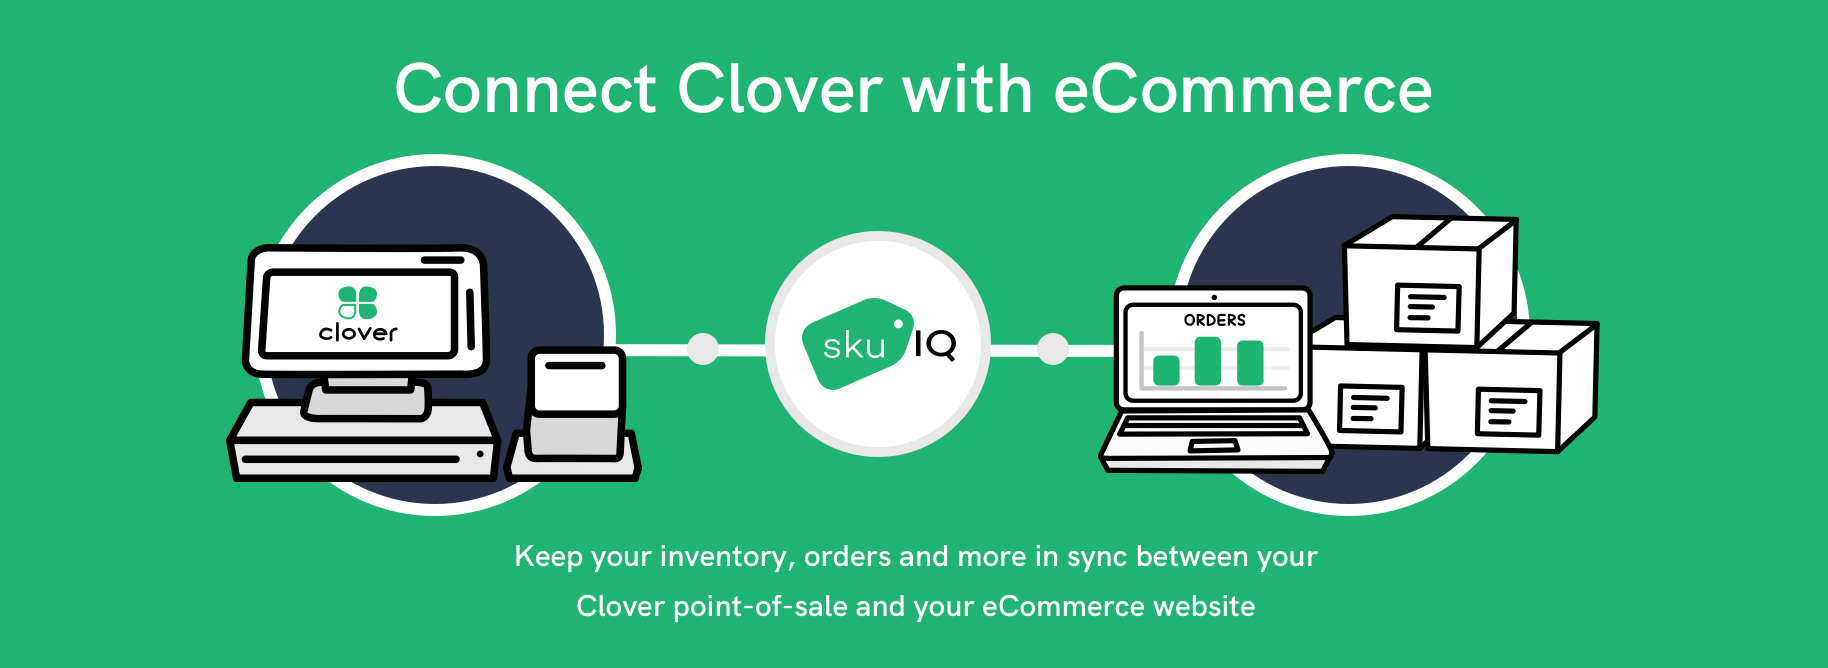 Clover eCommerce + SKU IQ